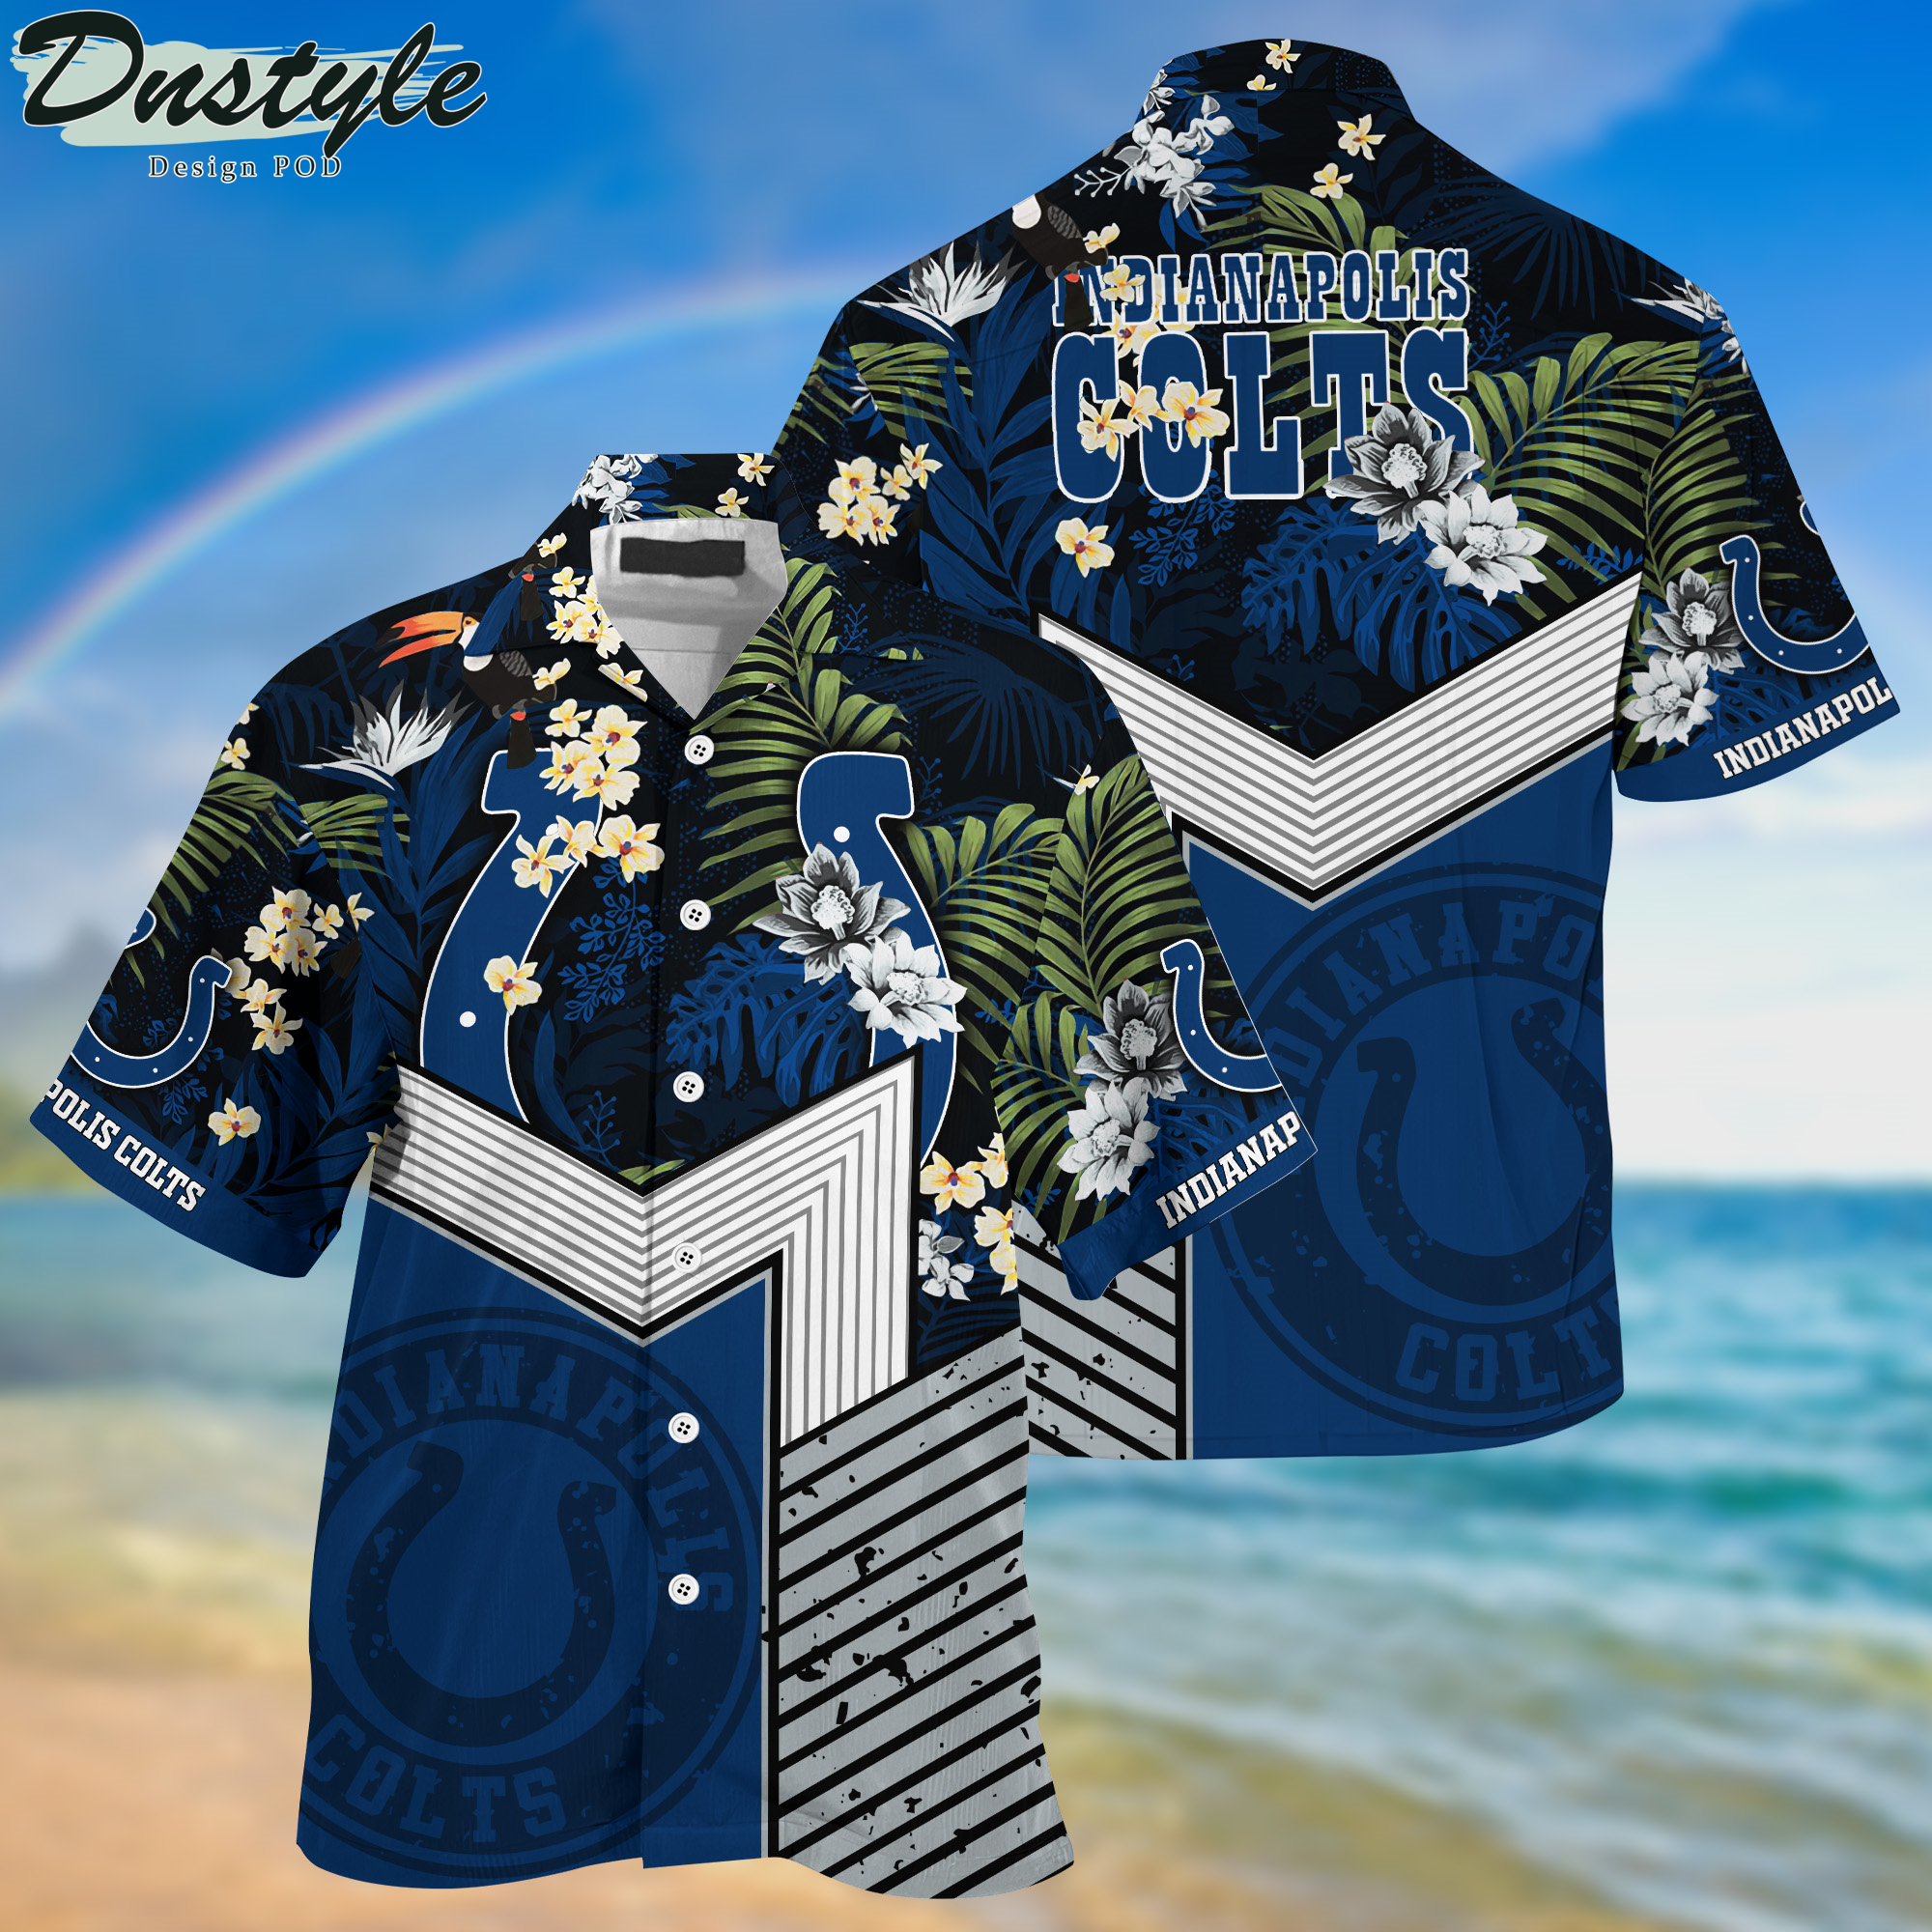 Indianapolis Colts Hawaii Shirt And Shorts New Collection